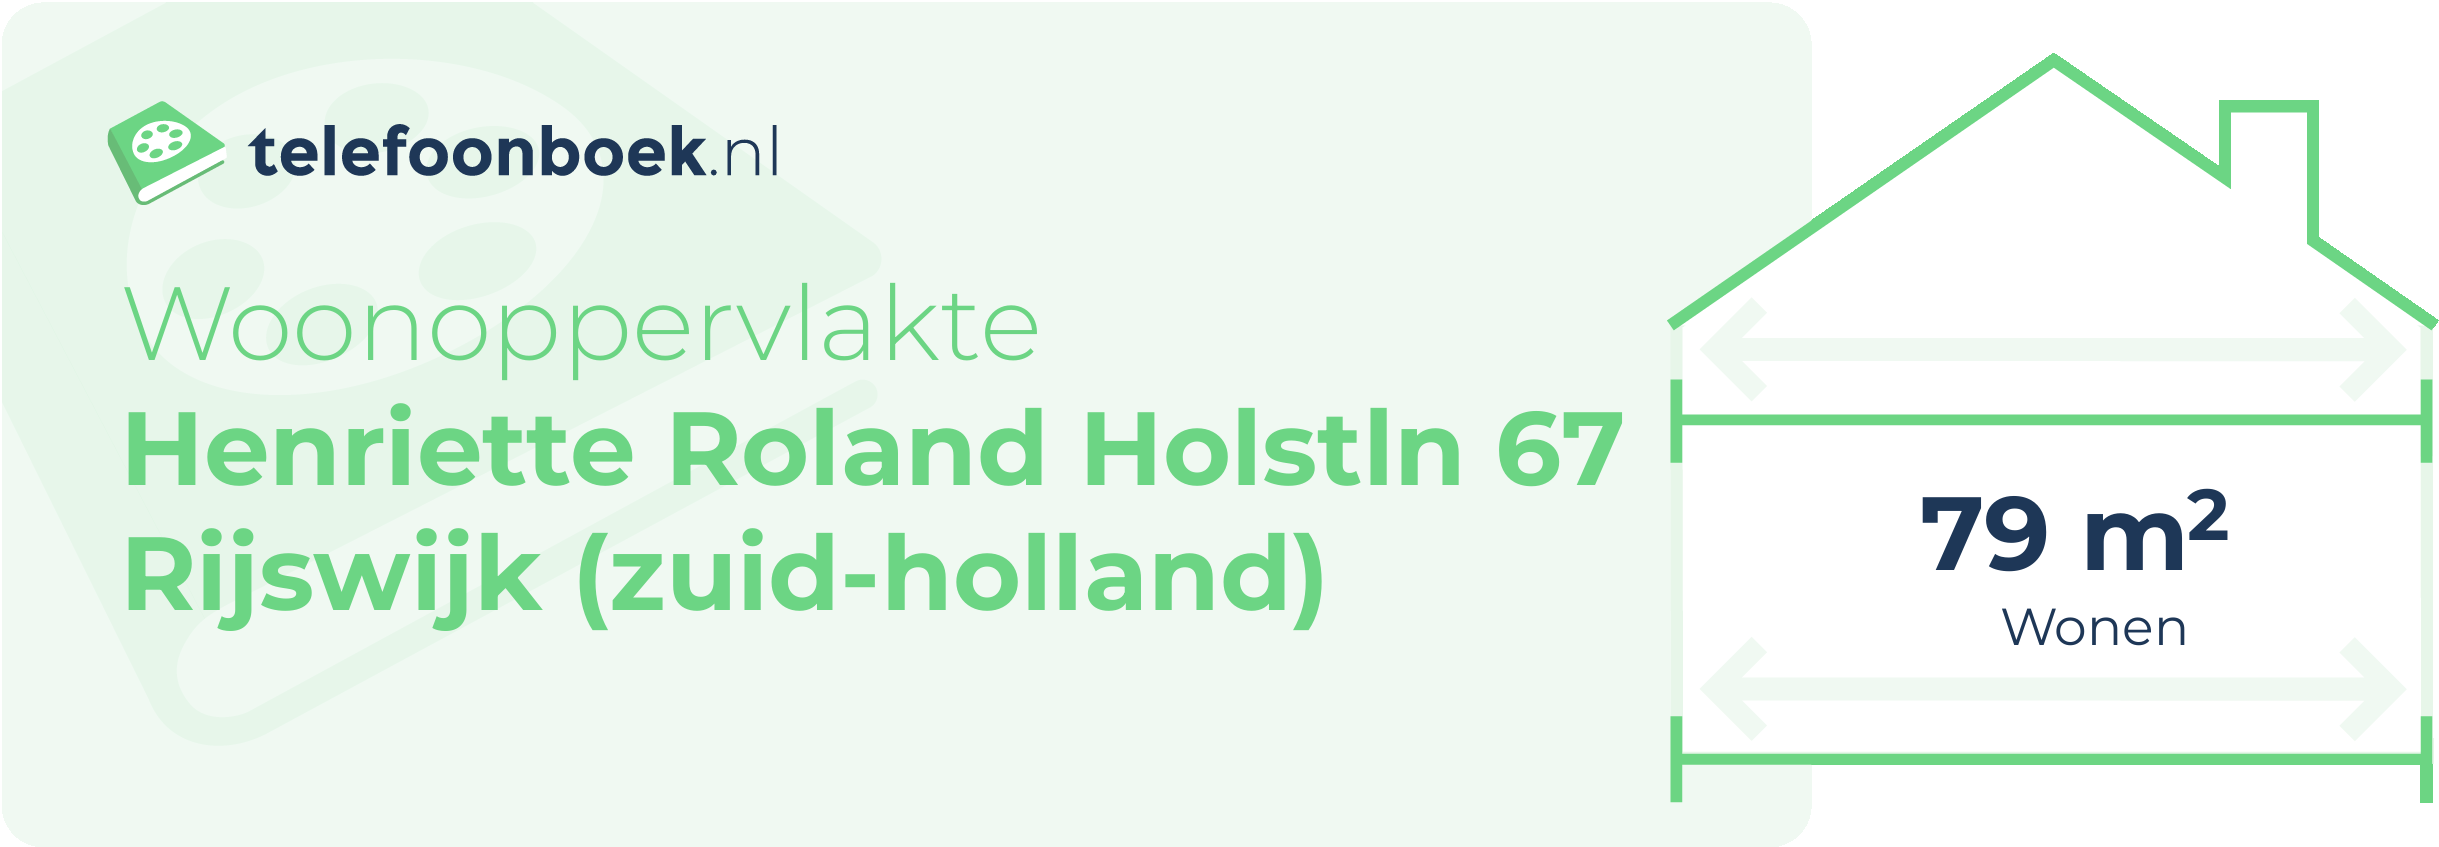 Woonoppervlakte Henriette Roland Holstln 67 Rijswijk (Zuid-Holland)